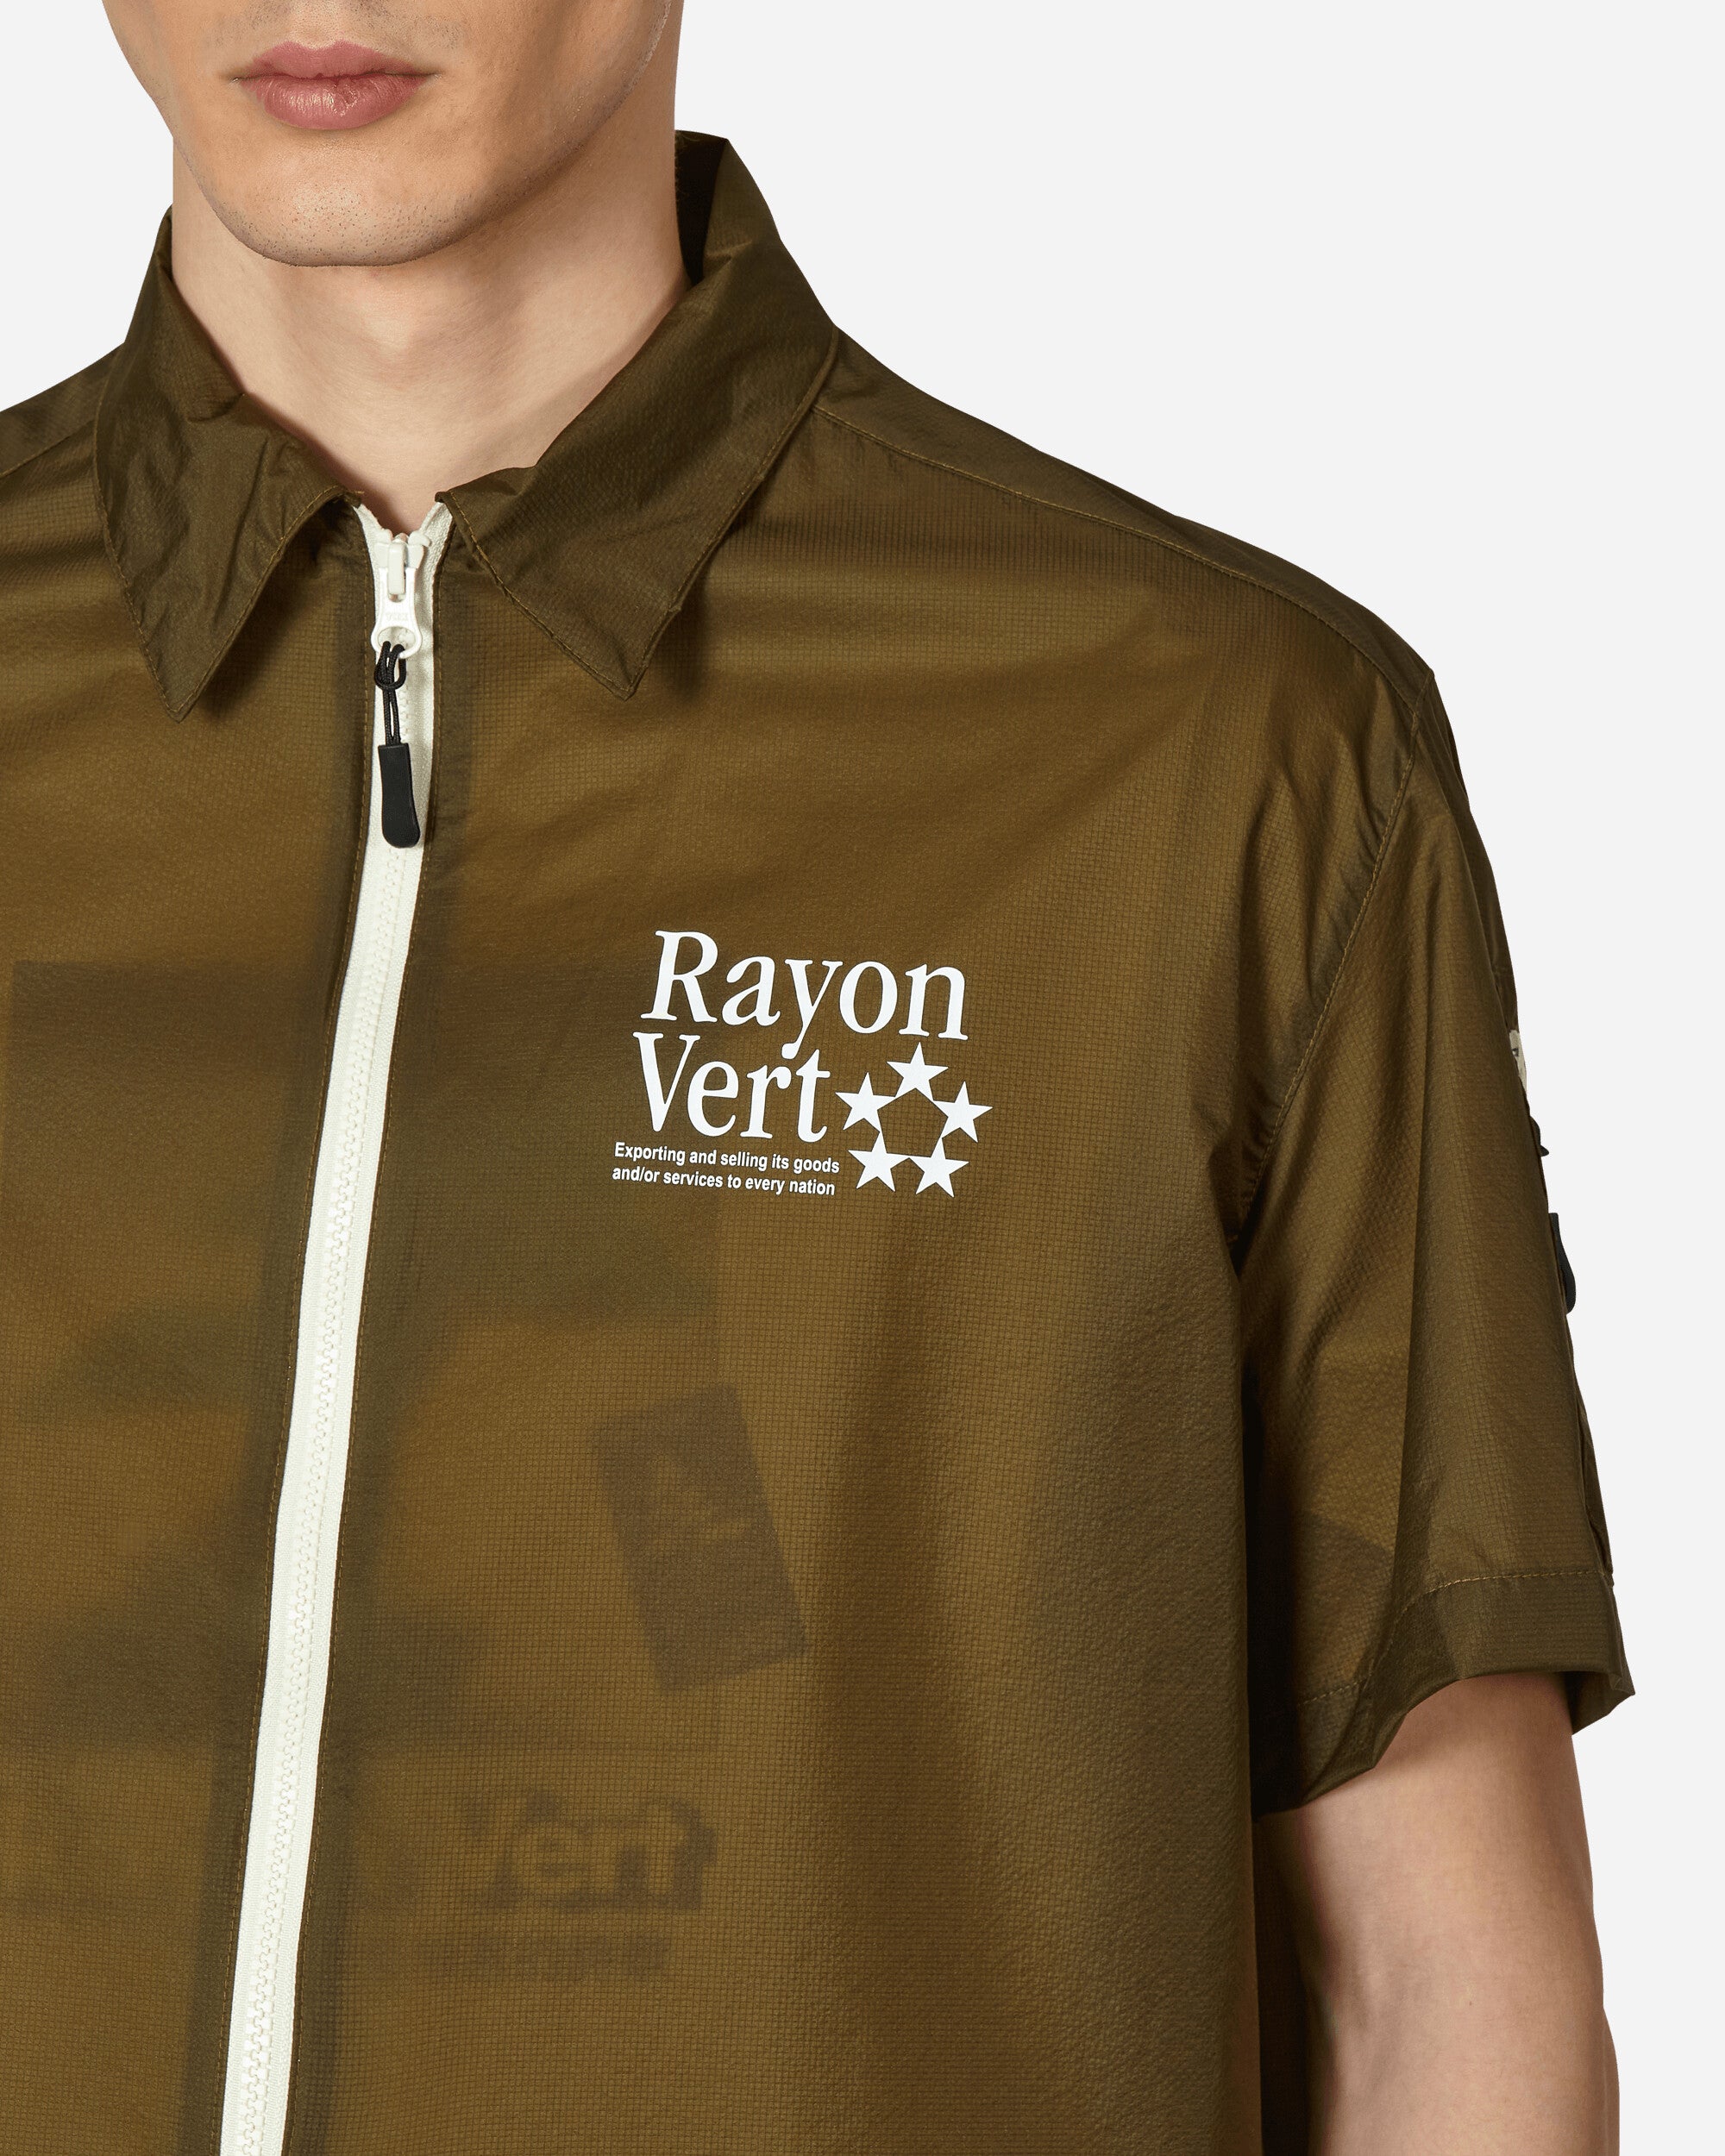 Rayon Vert Guido Ss Shirt Black T-Shirts Shortsleeve RVS1-SH09 BLACK